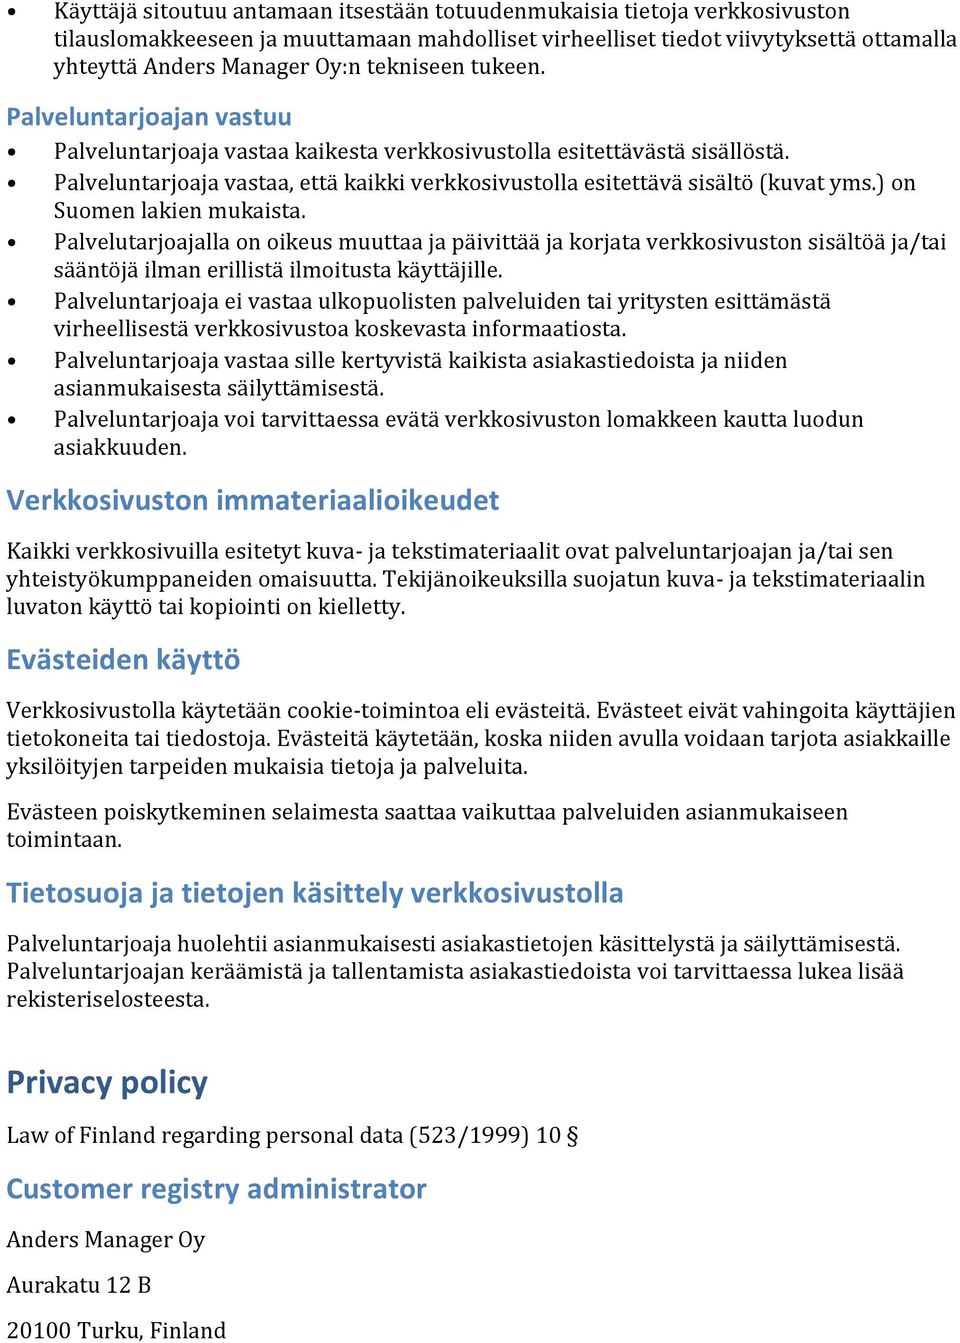 Palveluntarjoaja vastaa, että kaikki verkkosivustolla esitettävä sisältö (kuvat yms.) on Suomen lakien mukaista.